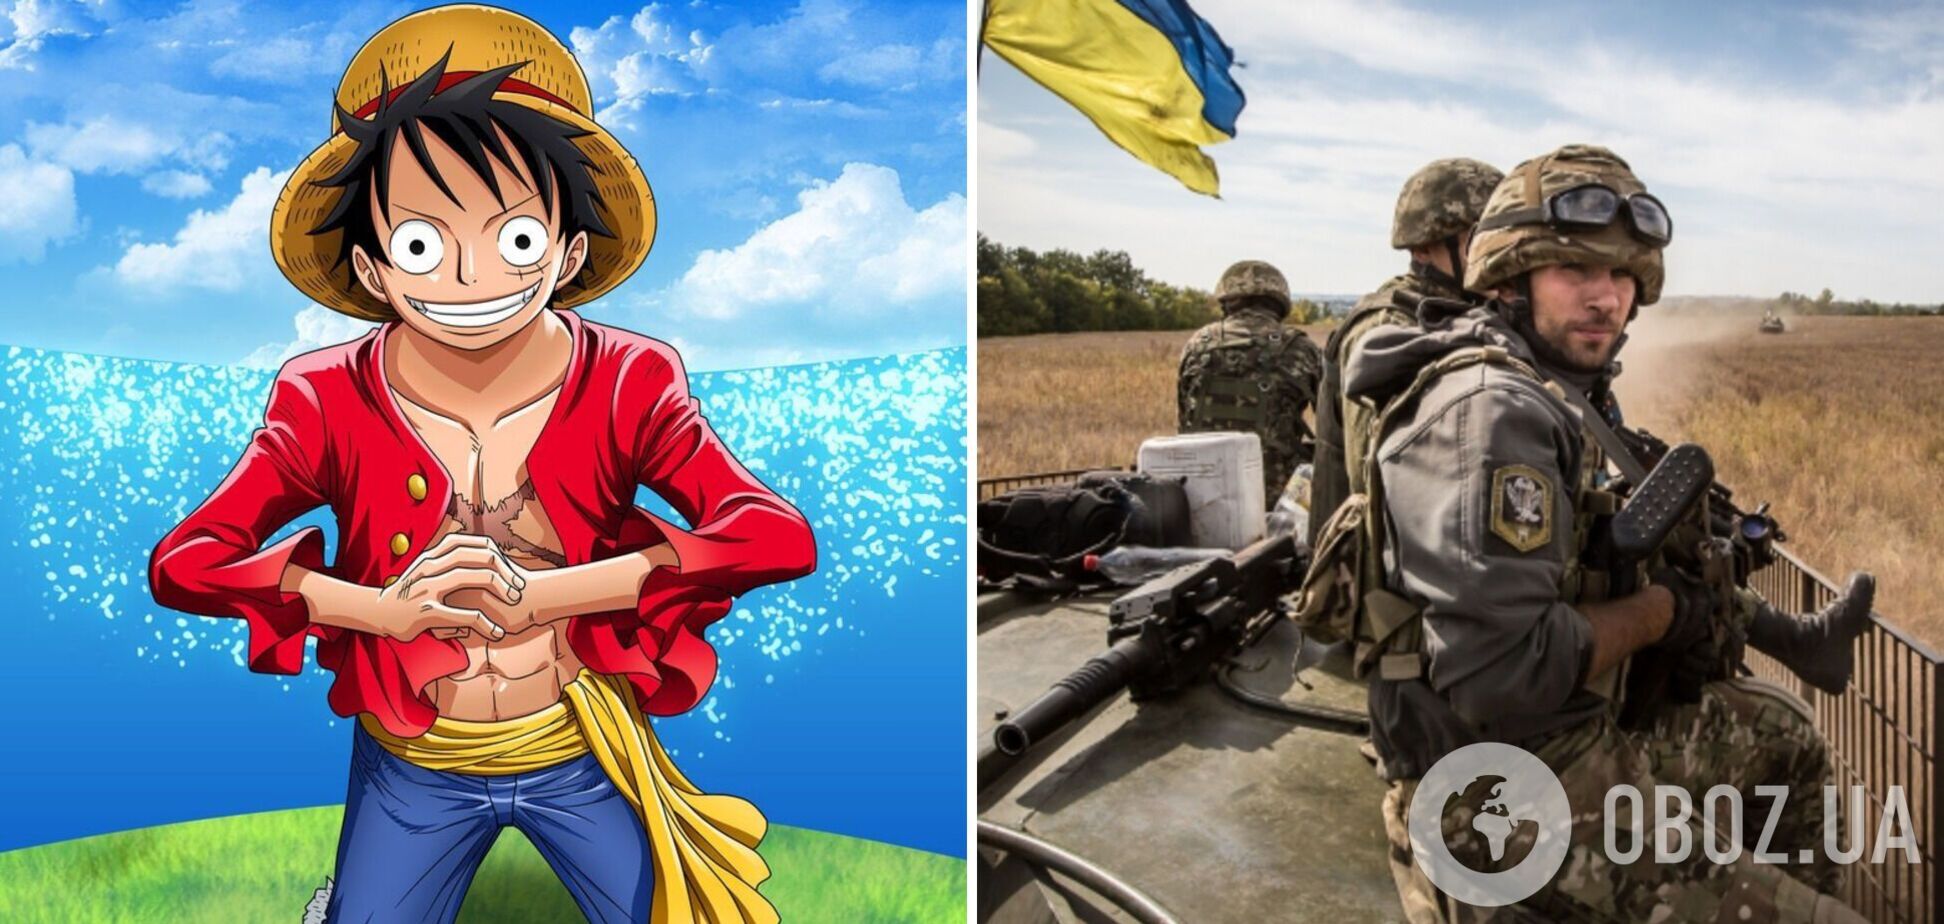 Міноборони України викликало захоплення у мережі відсиланням до цитати героя аніме 'One Piece. Великий куш': що вона означає